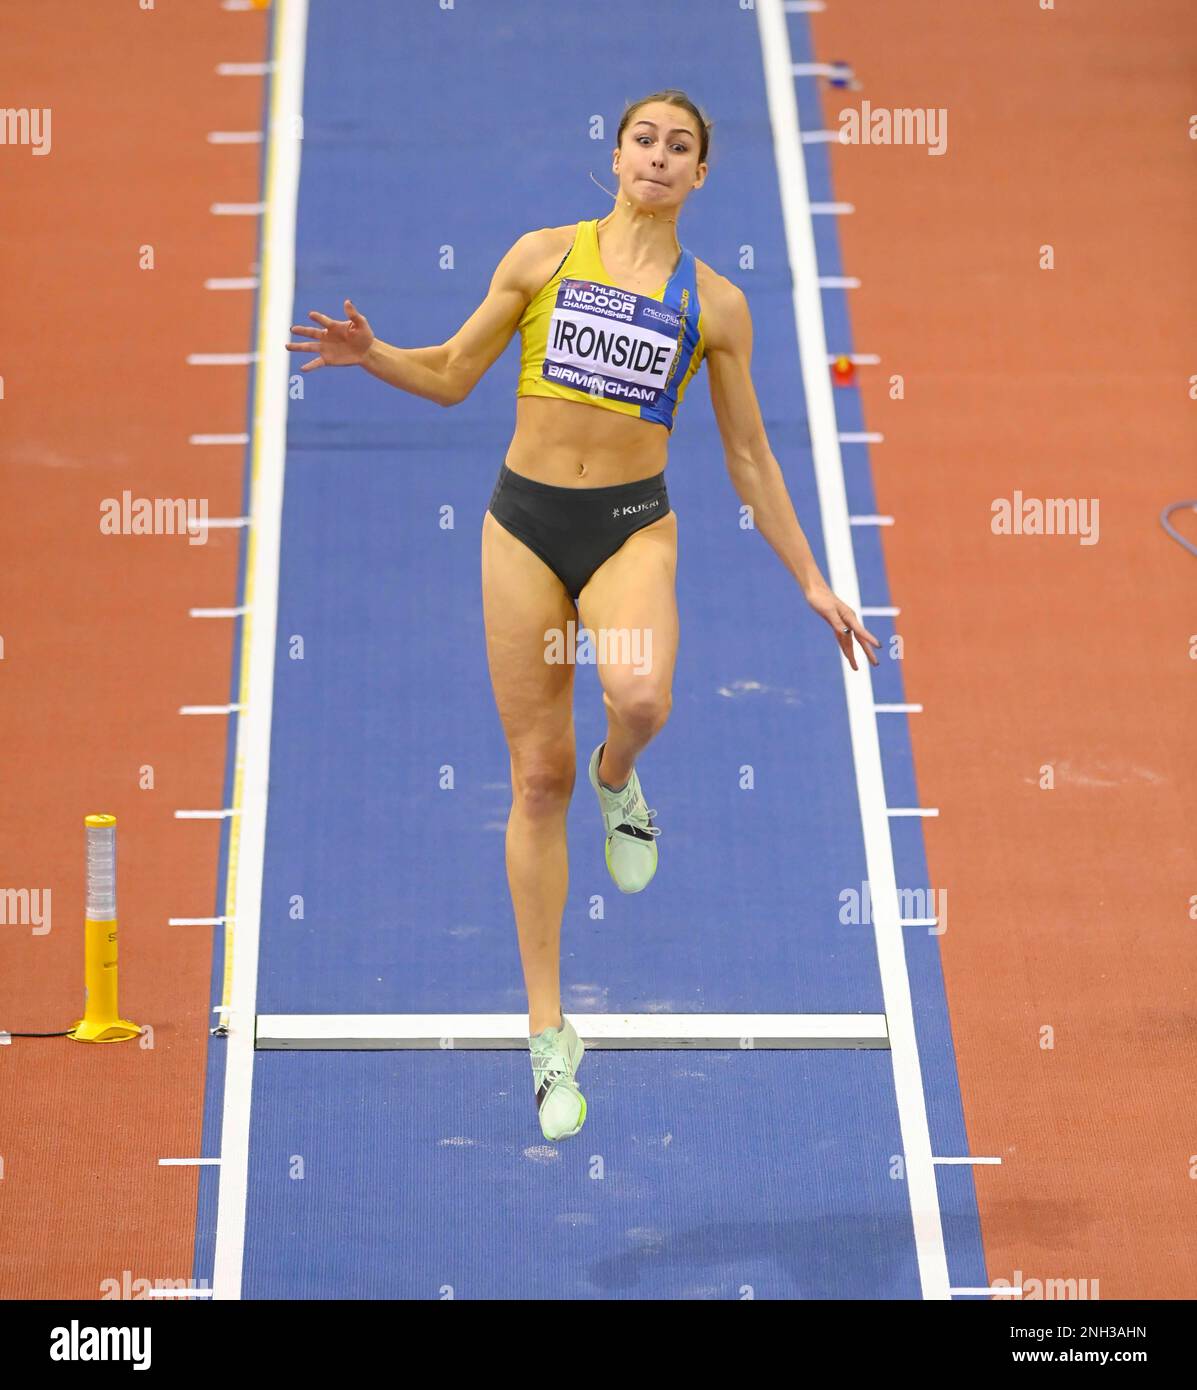 BIRMINGHAM, ENGLAND - FEBRUAR 19: Brooke IRONSIDE während des Long Jump beim britischen Leichtathletik-Indoor-Championship-Tag 2 in der utilita Arena, Birmingham, England Stockfoto